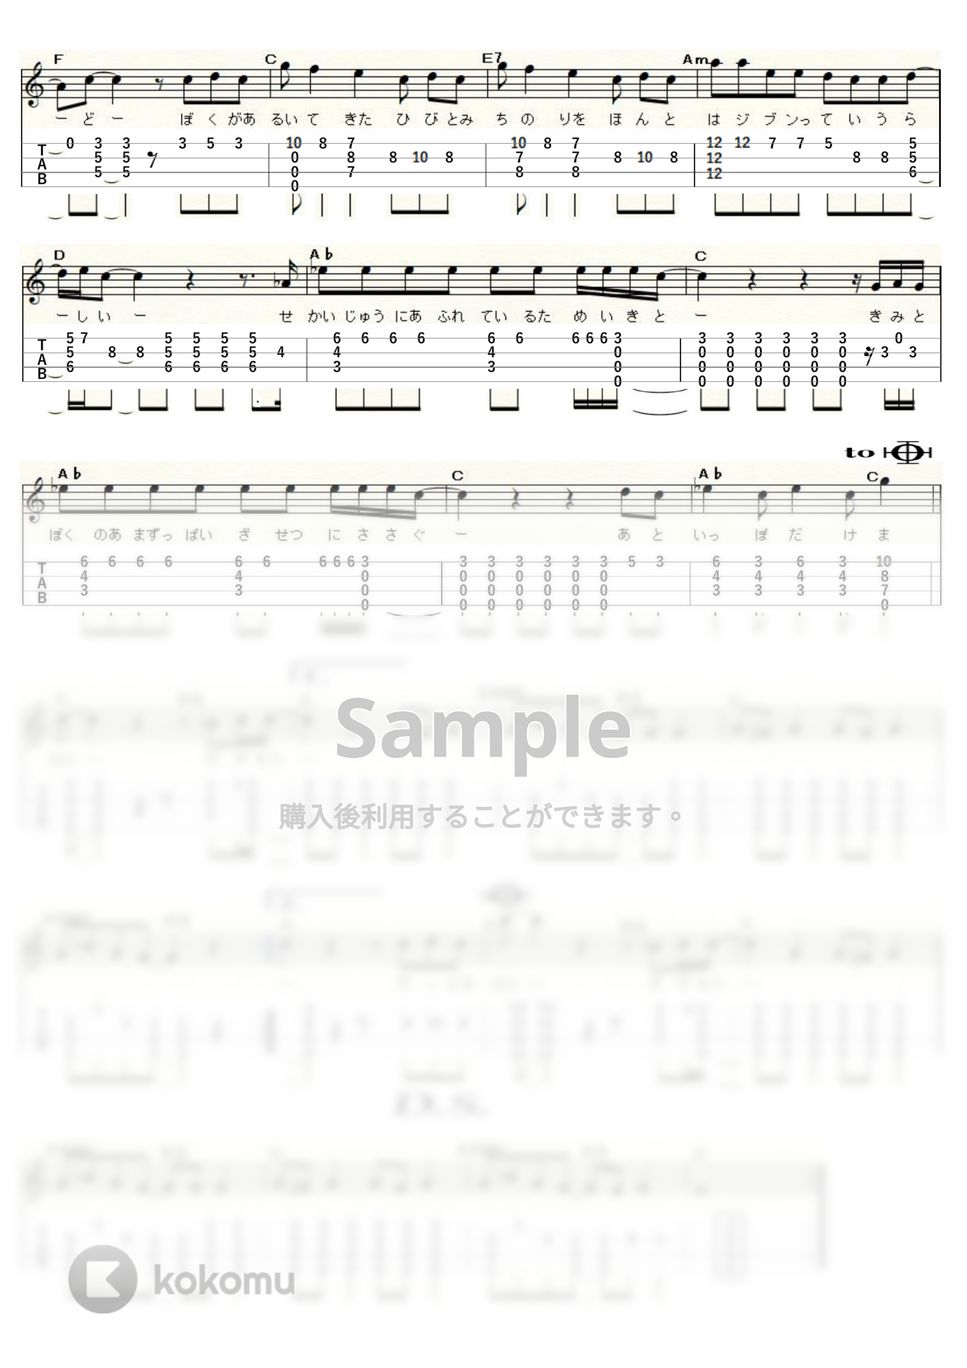 『プロフェッショナル仕事の流儀』 - PROGRESS（スガシカオ） (ｳｸﾚﾚｿﾛ / High-G・Low-G / 中級～上級) by ukulelepapa